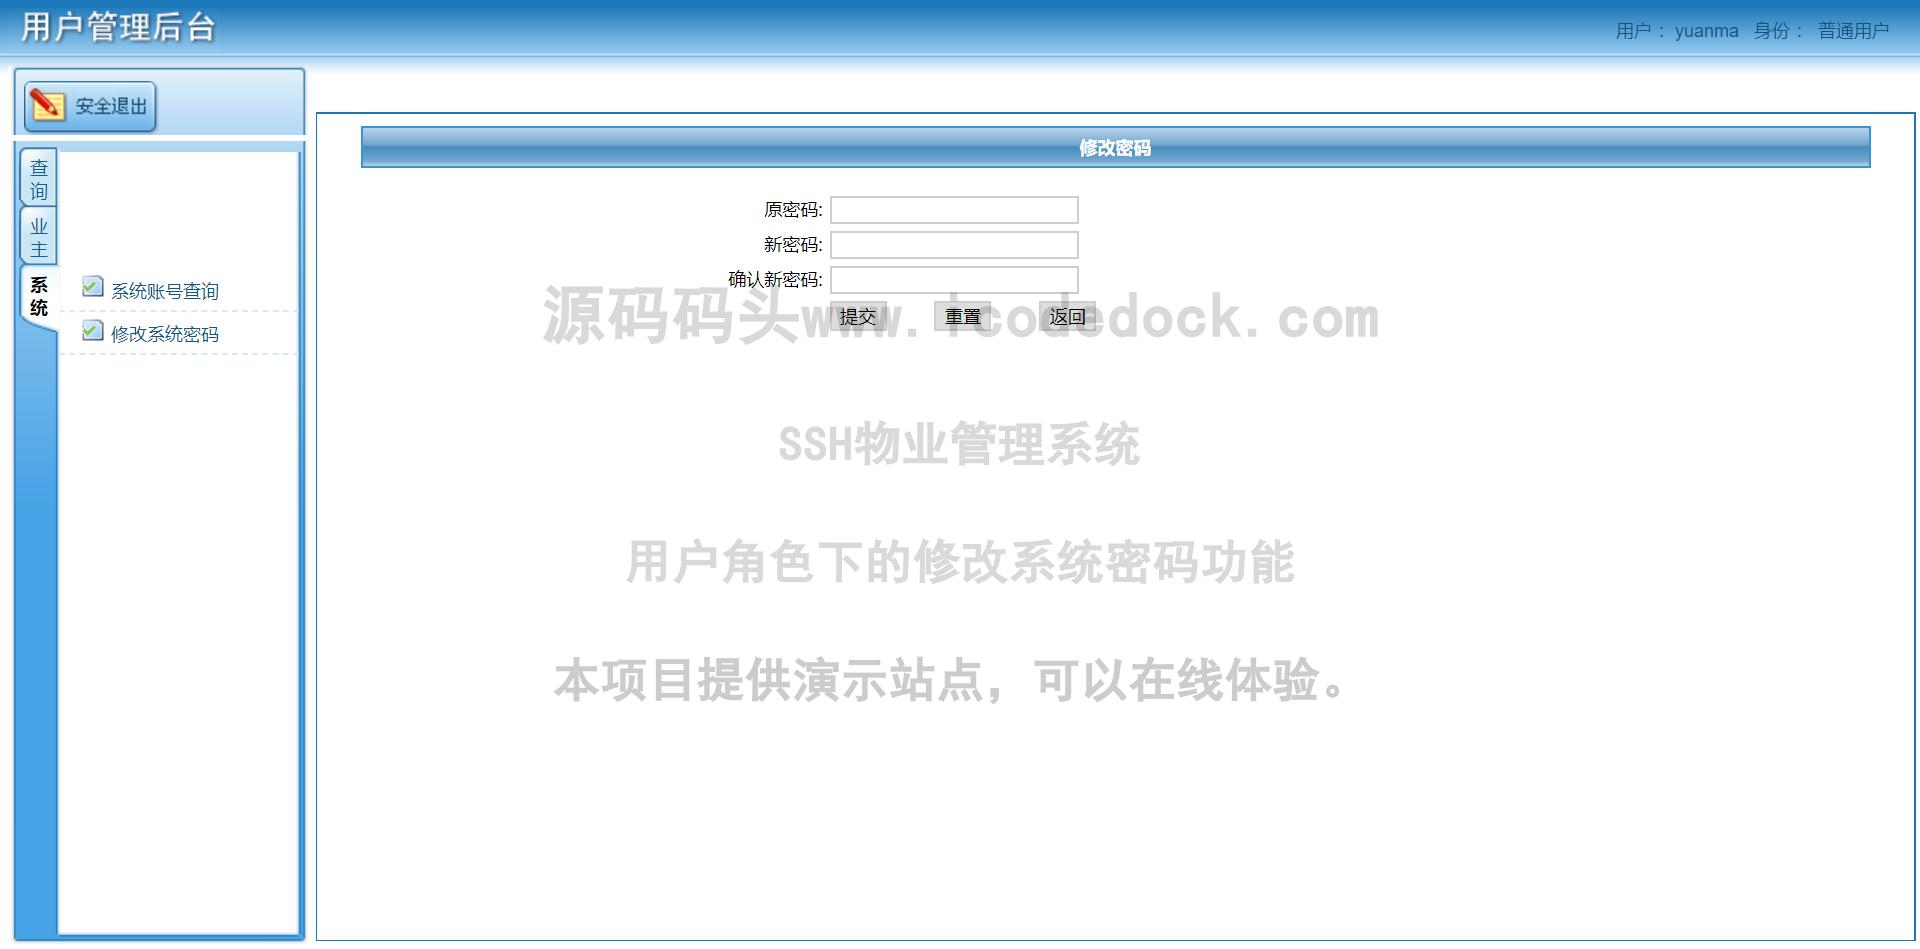 源码码头-SSH物业管理系统-用户角色-修改系统密码